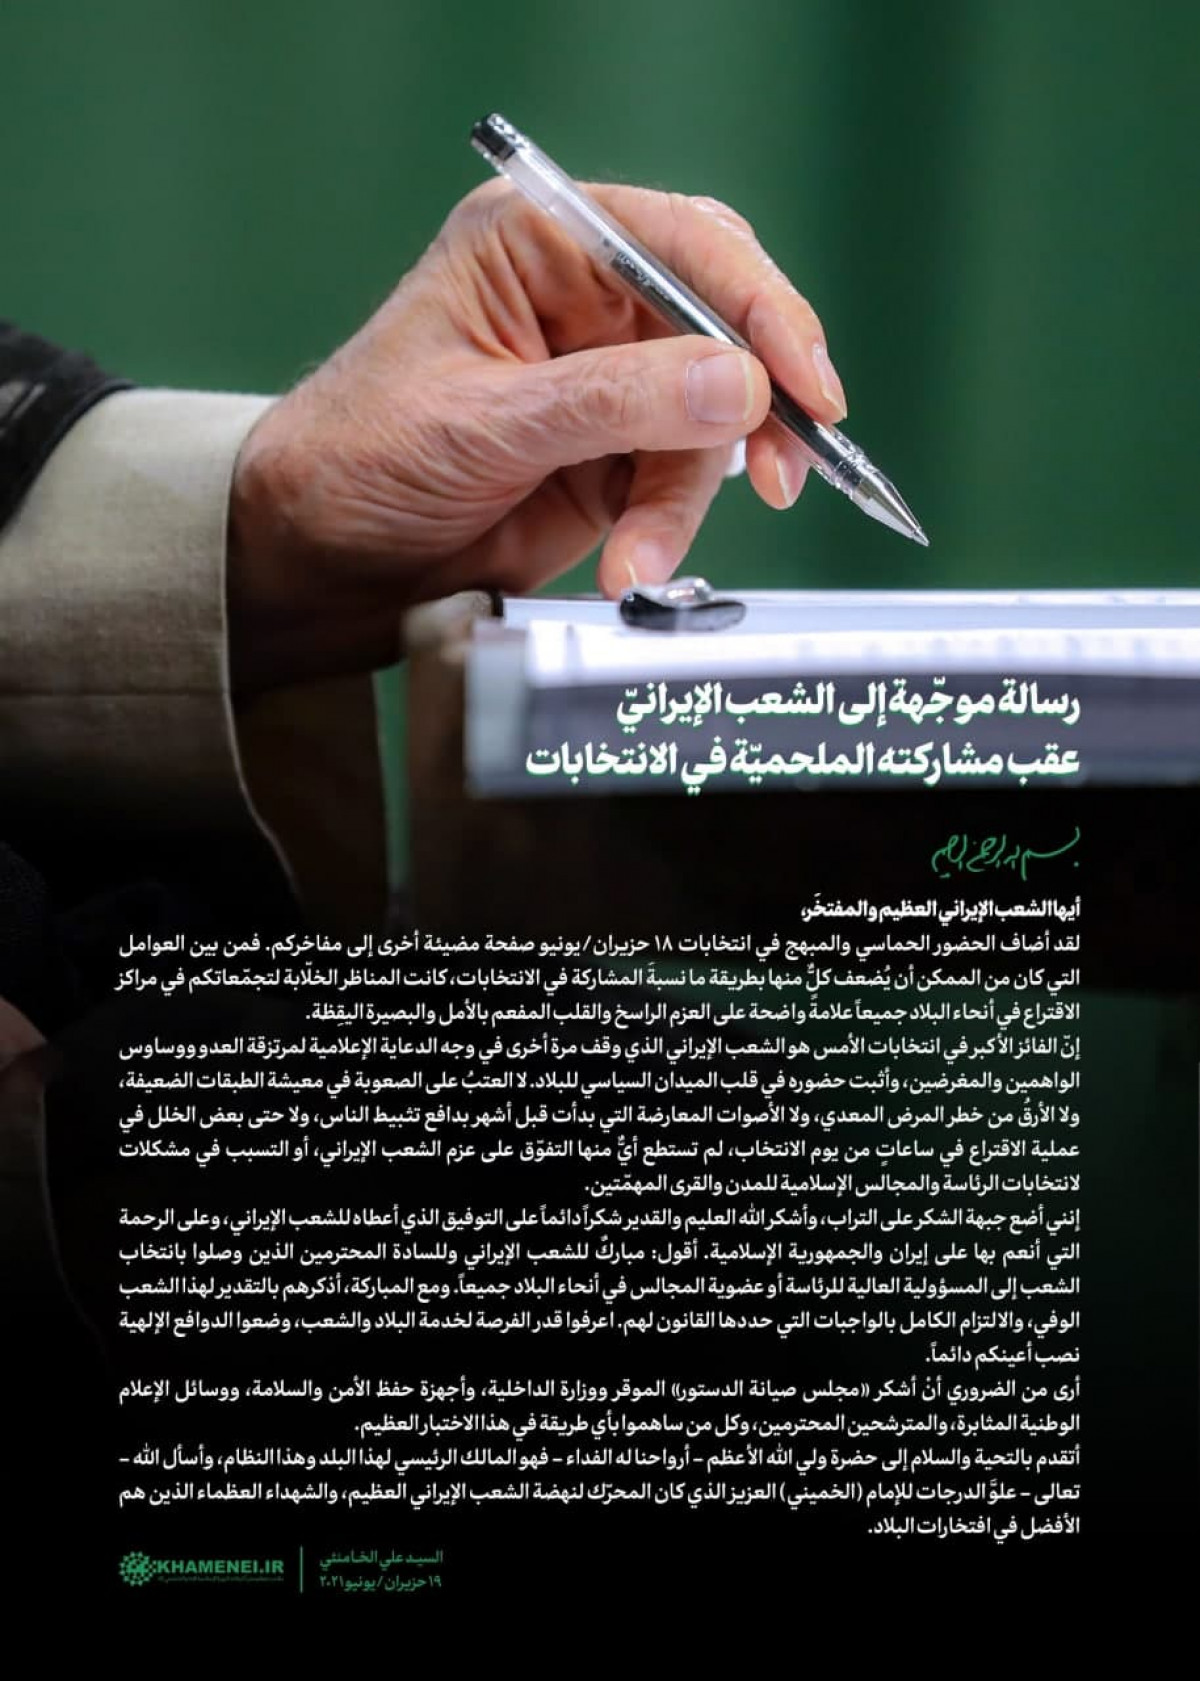 رسالة الإمام الخامنئي إلى الشعب الإيراني بمناسبة المشاركة الملحمية للناس في انتخابات 18 حزيران/يونيو